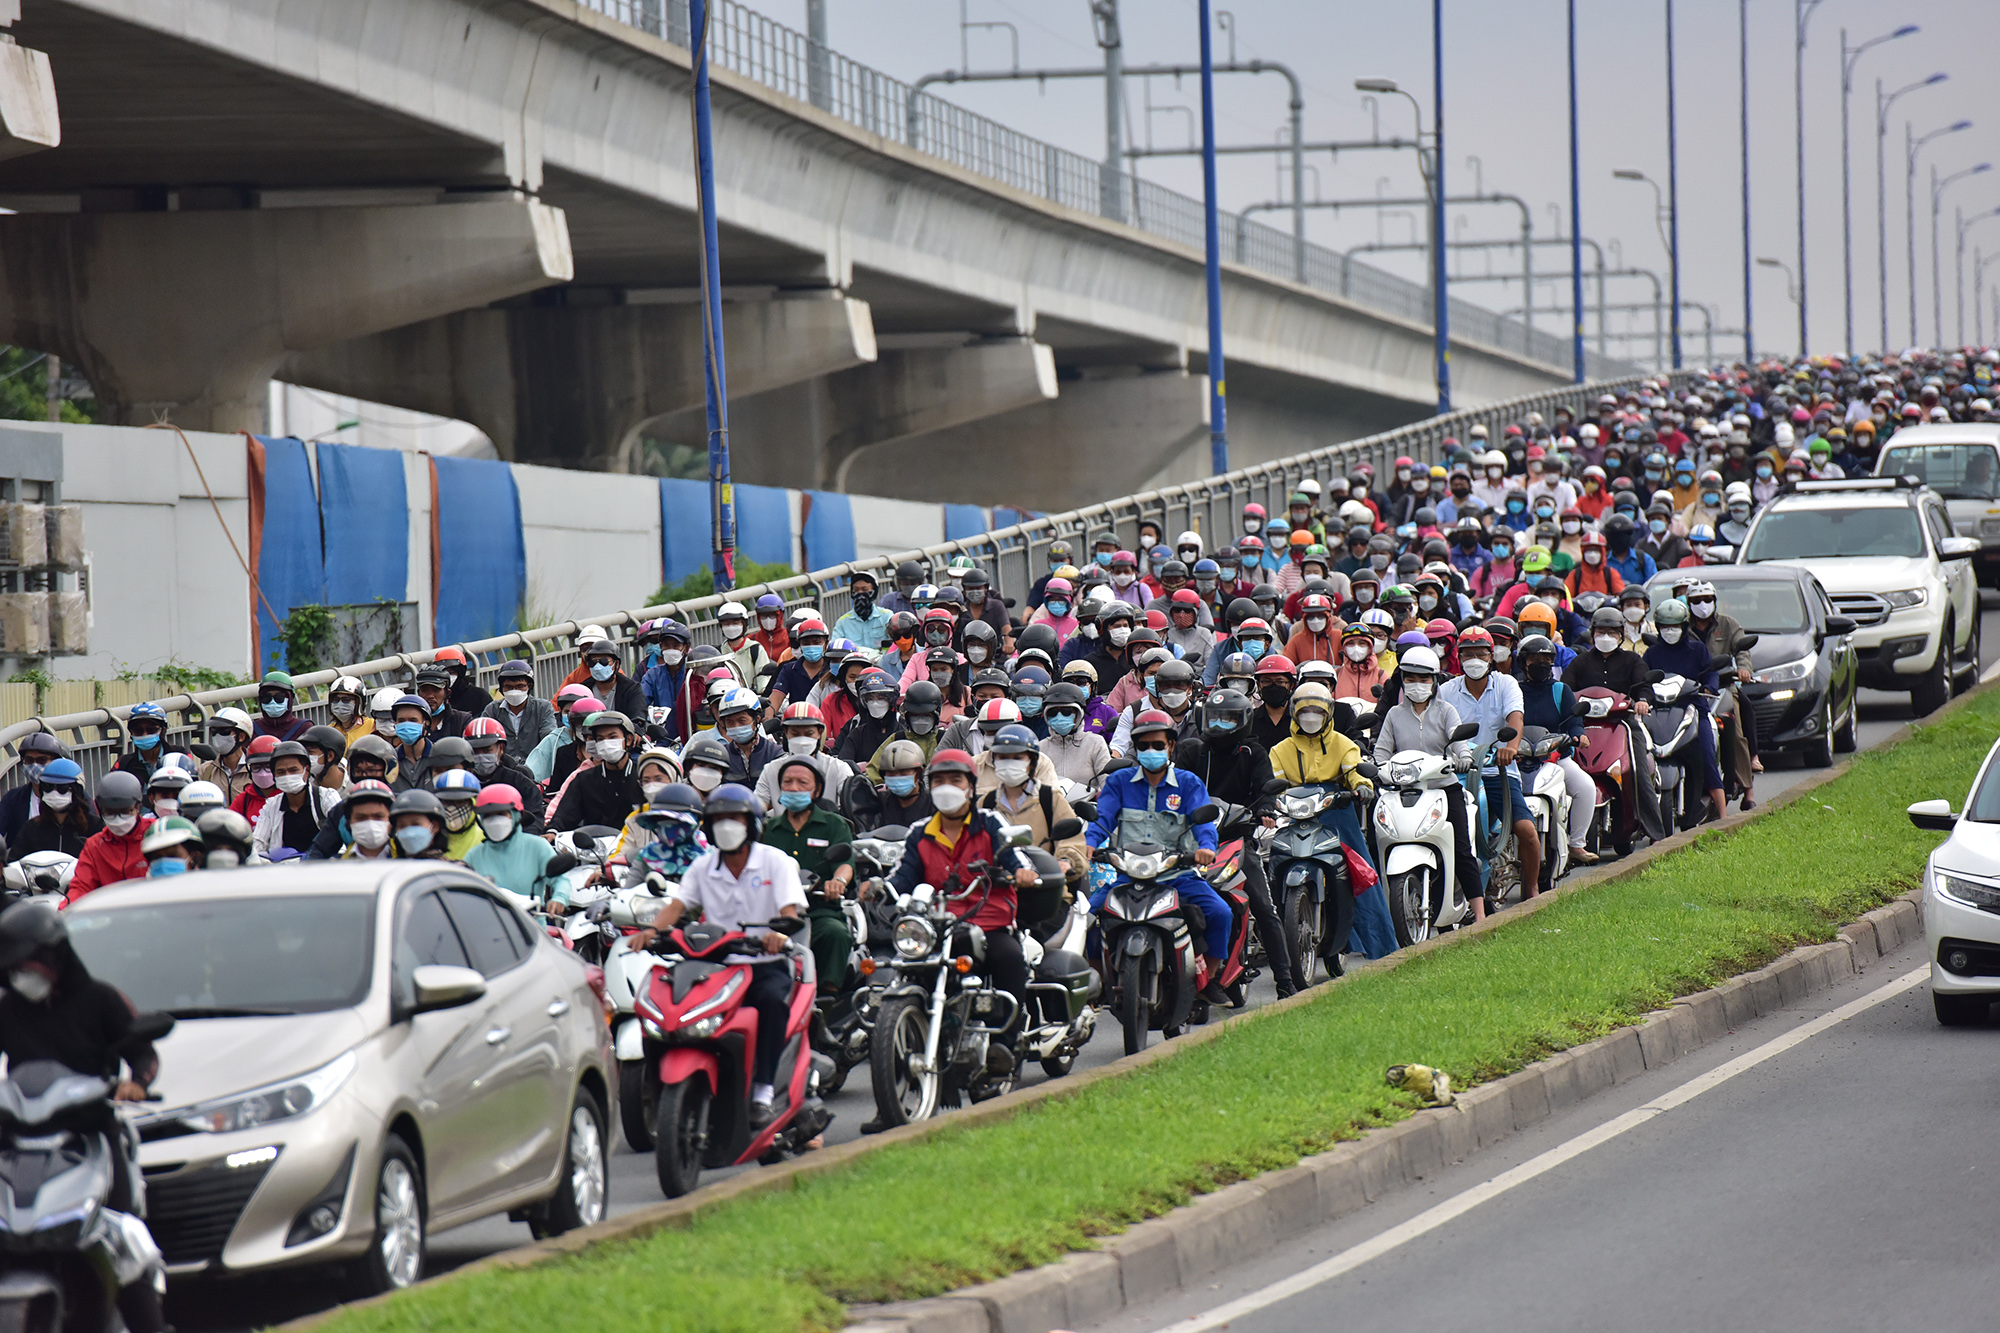 Hà Nội, TP.HCM lại tắc đường kinh hoàng sau nghỉ lễ, người dân chật vật tới nơi làm việc - 33